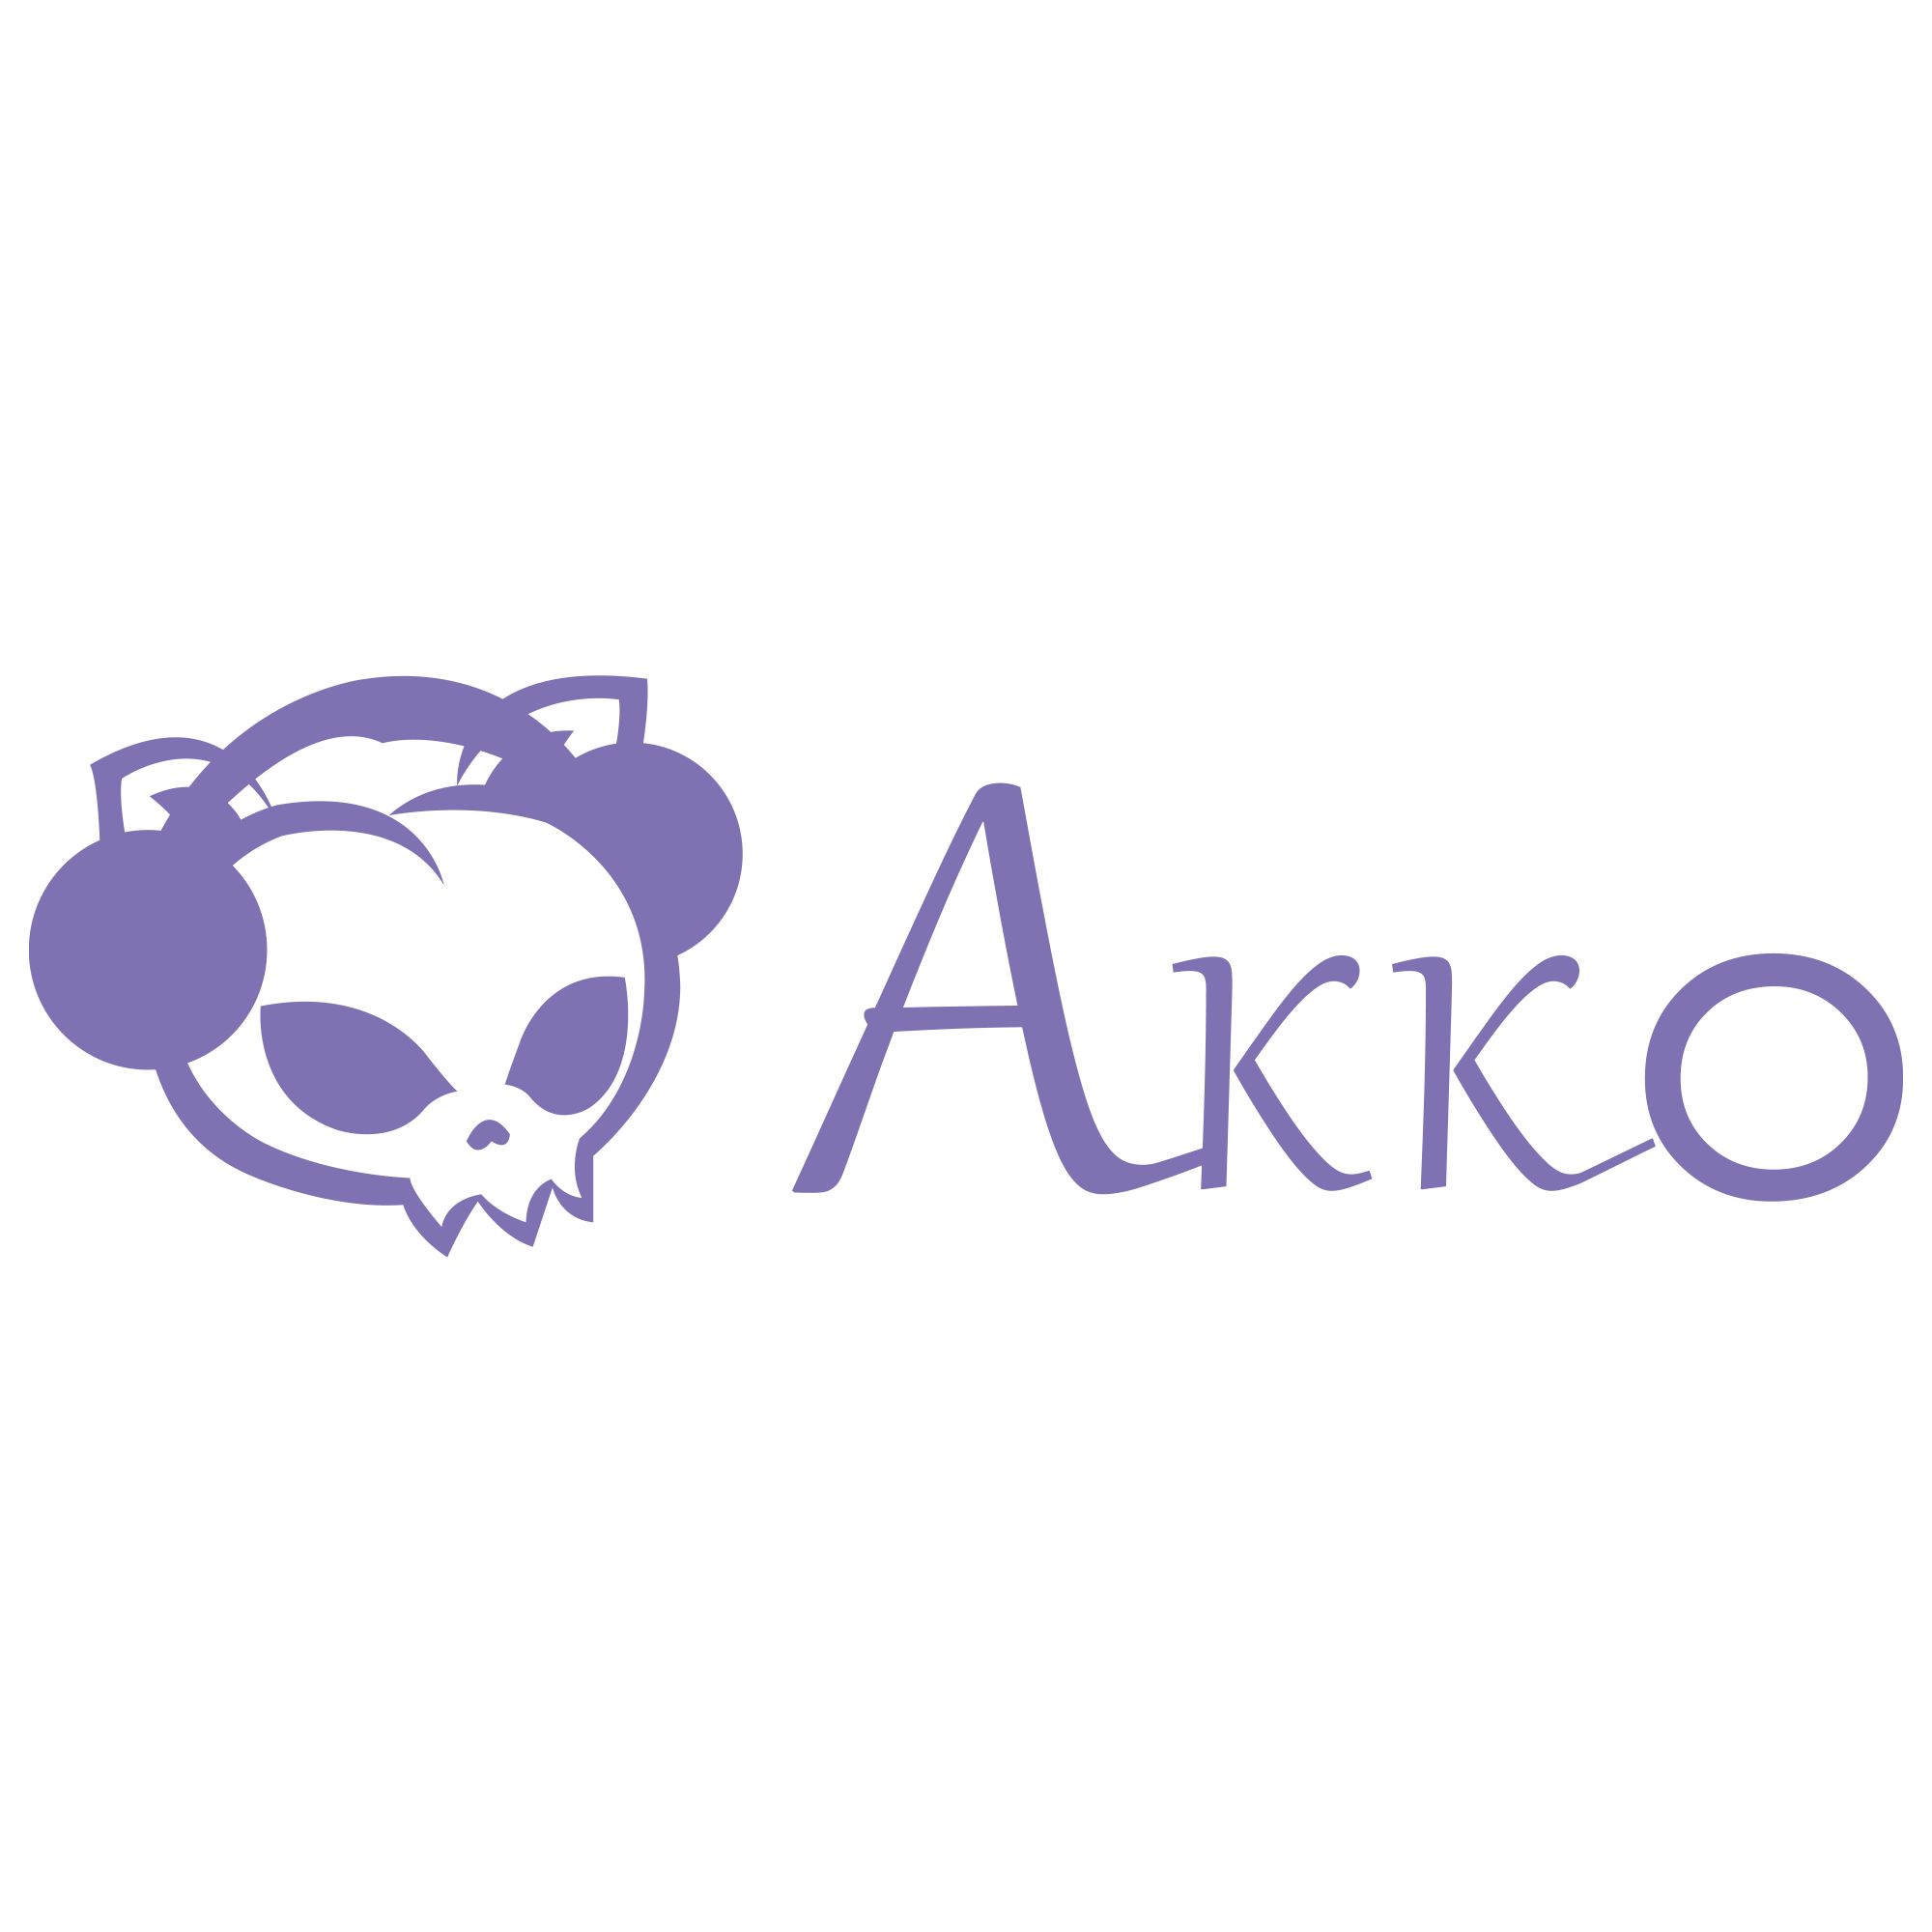 Akko